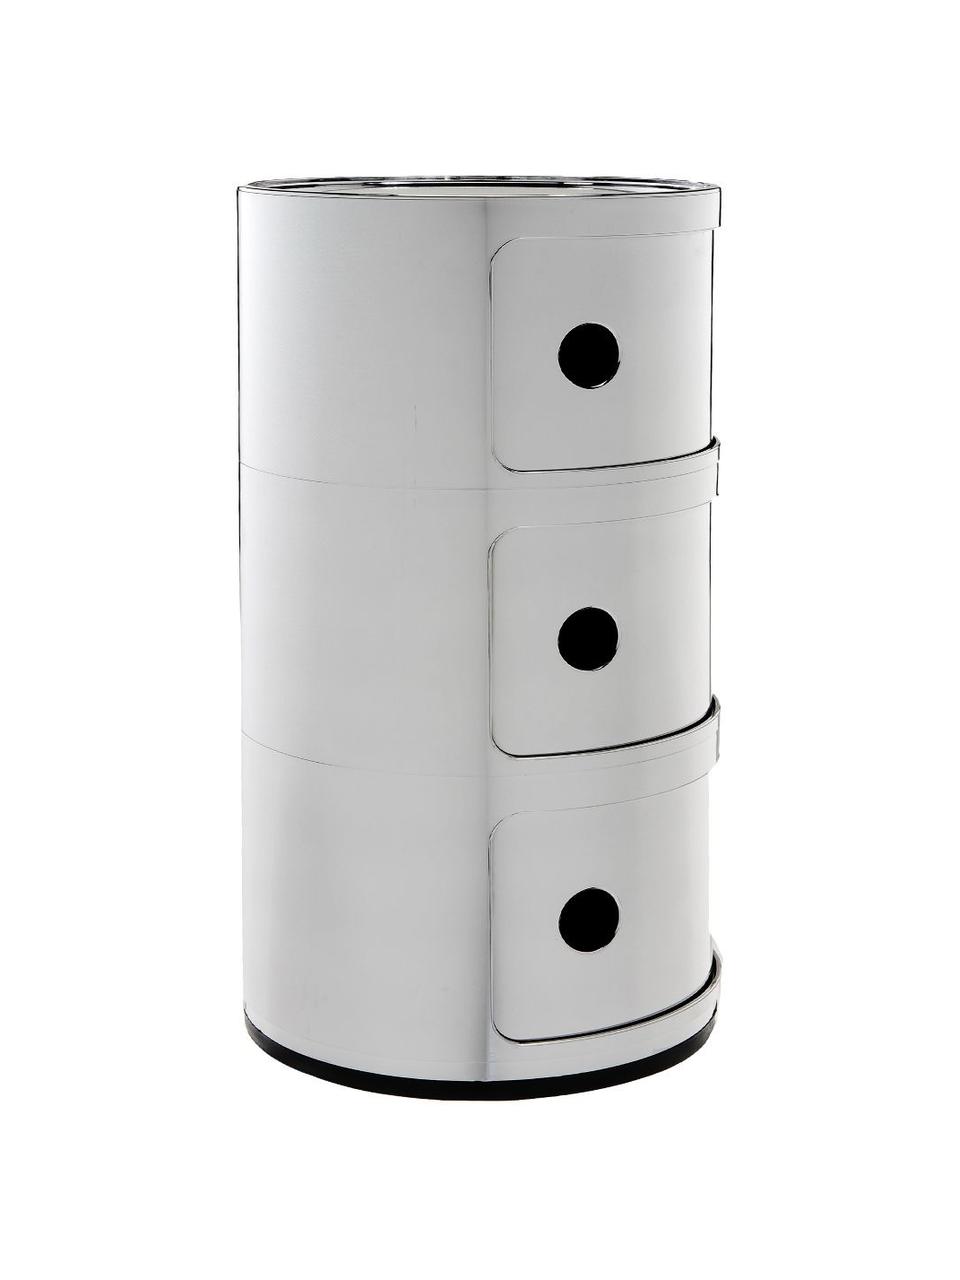 Design container Componibili 3 modules in zilver, Kunststof (ABS), gelakt, Greenguard gecertificeerd, Chroomkleurig, Ø 32 x H 59 cm